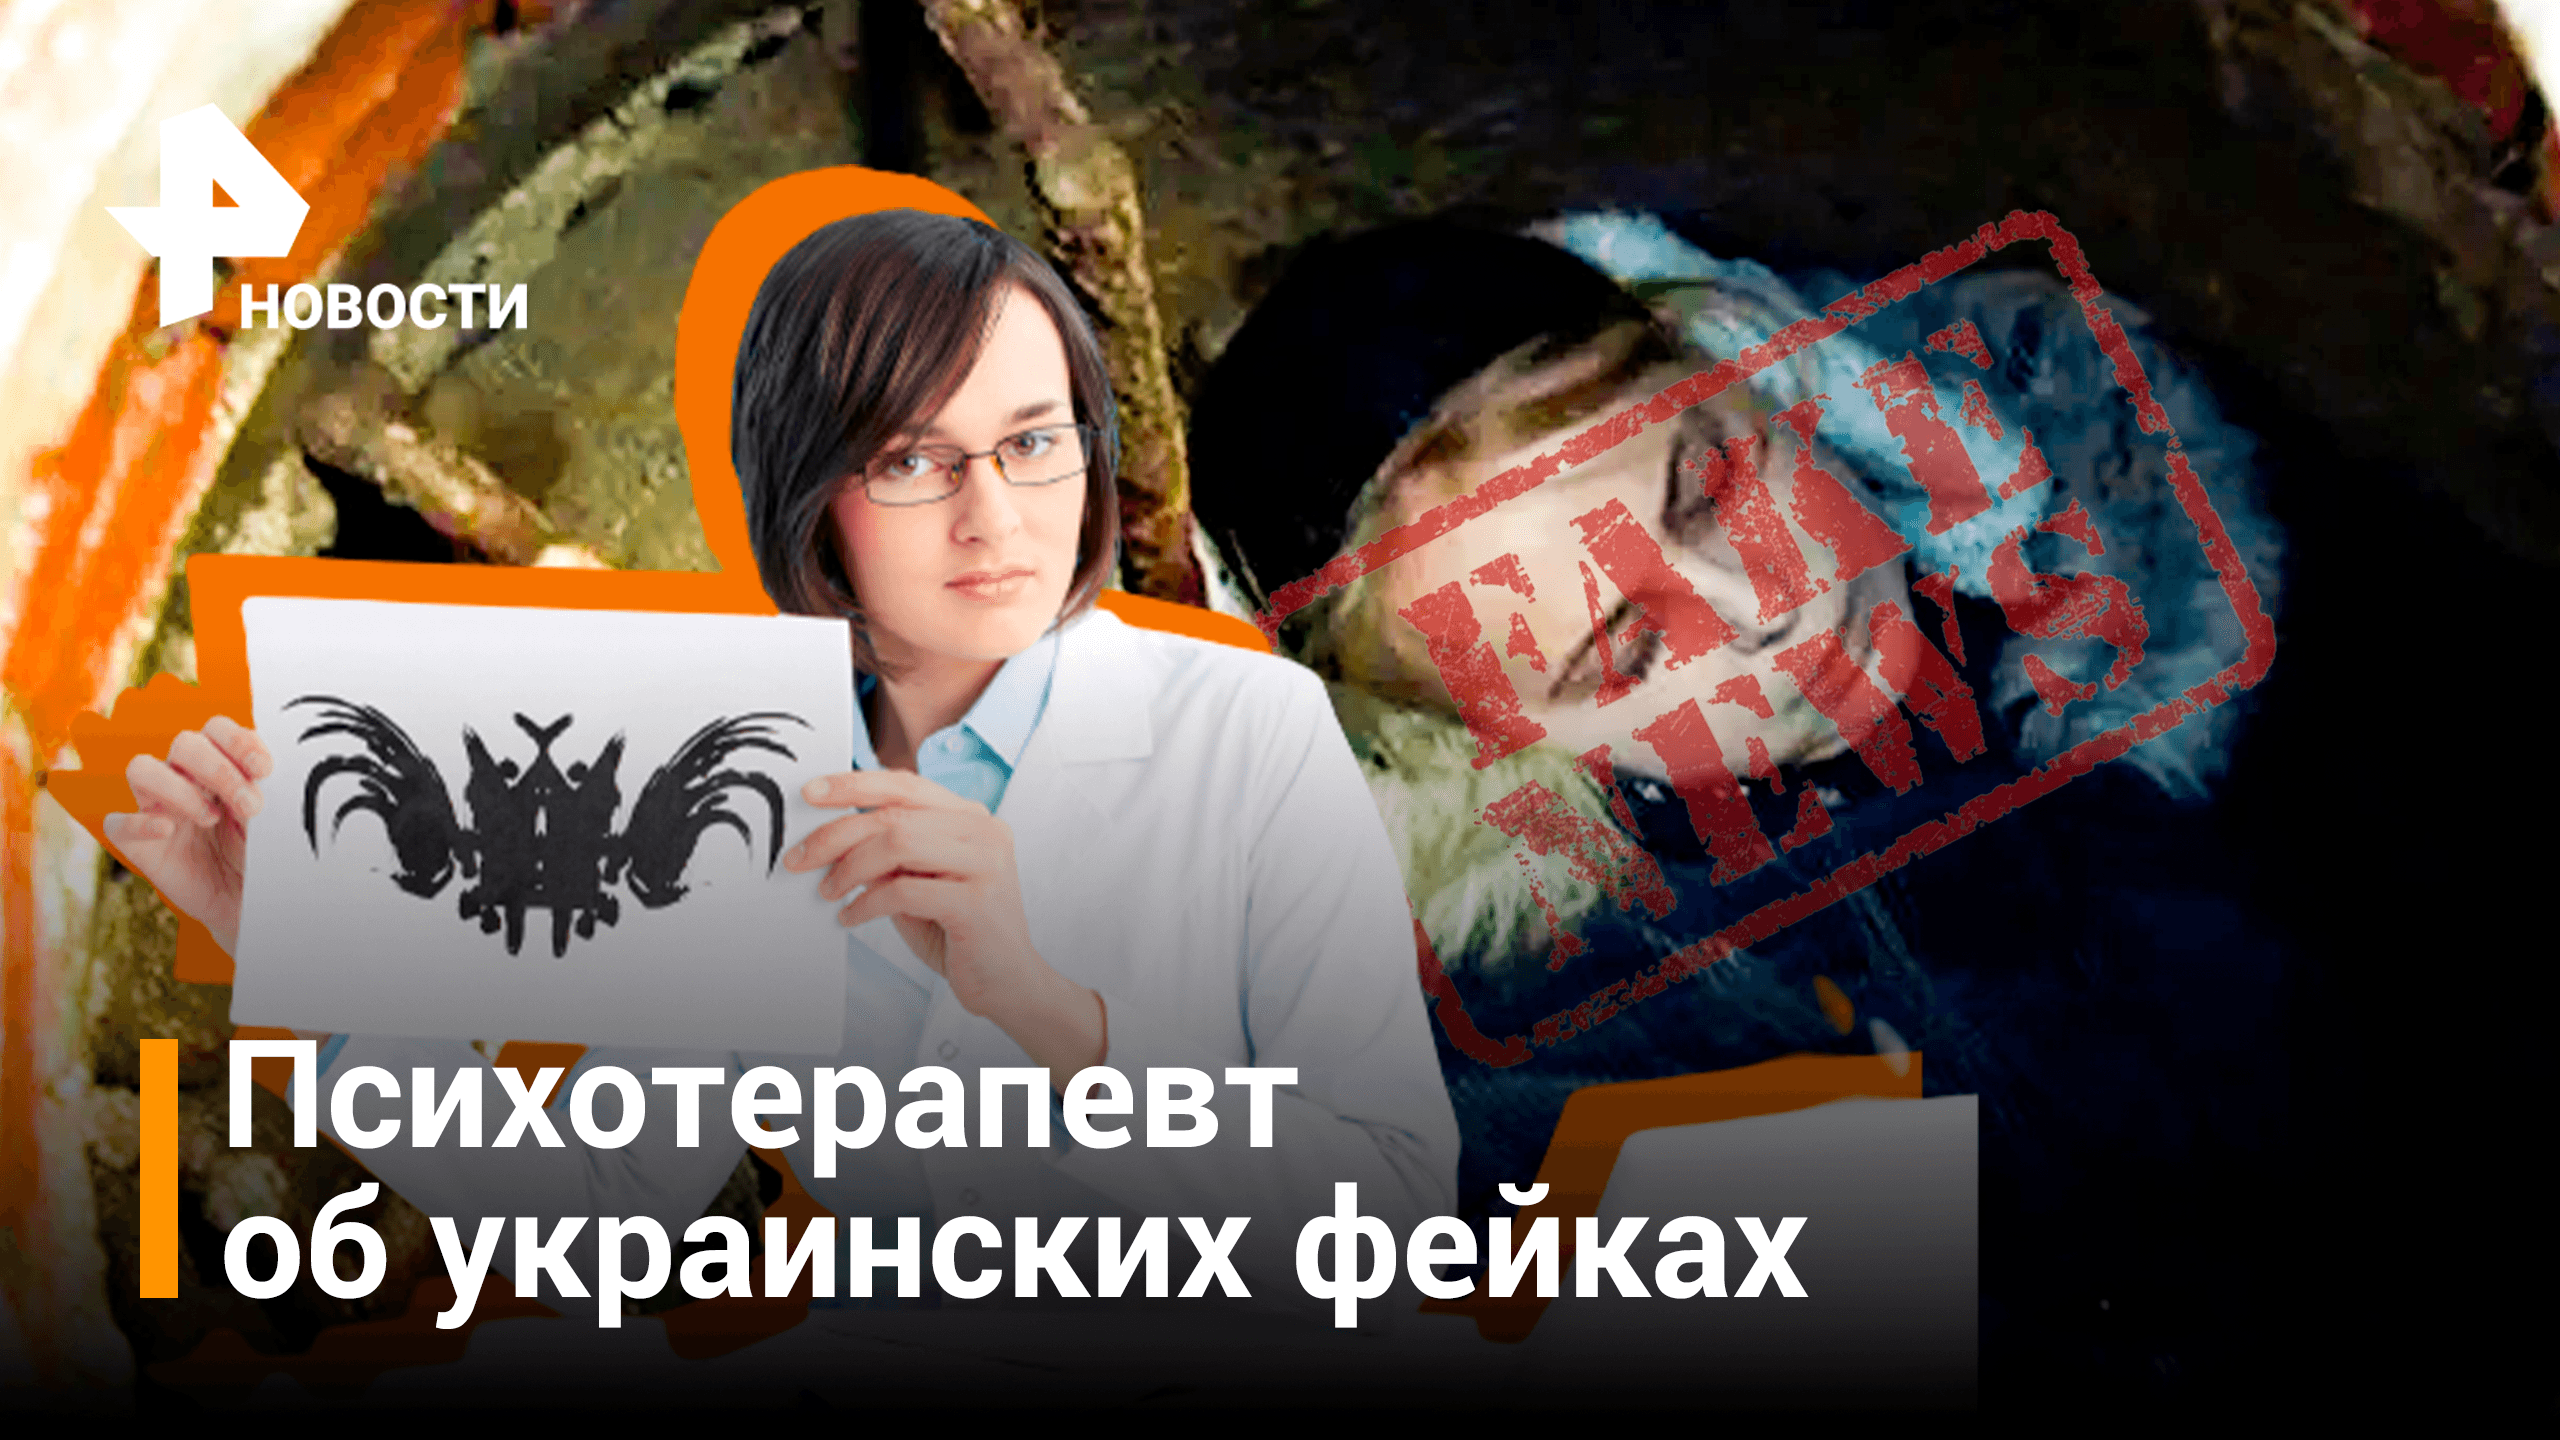 Психотерапевт объяснил схему работы украинских фейков / РЕН Новости